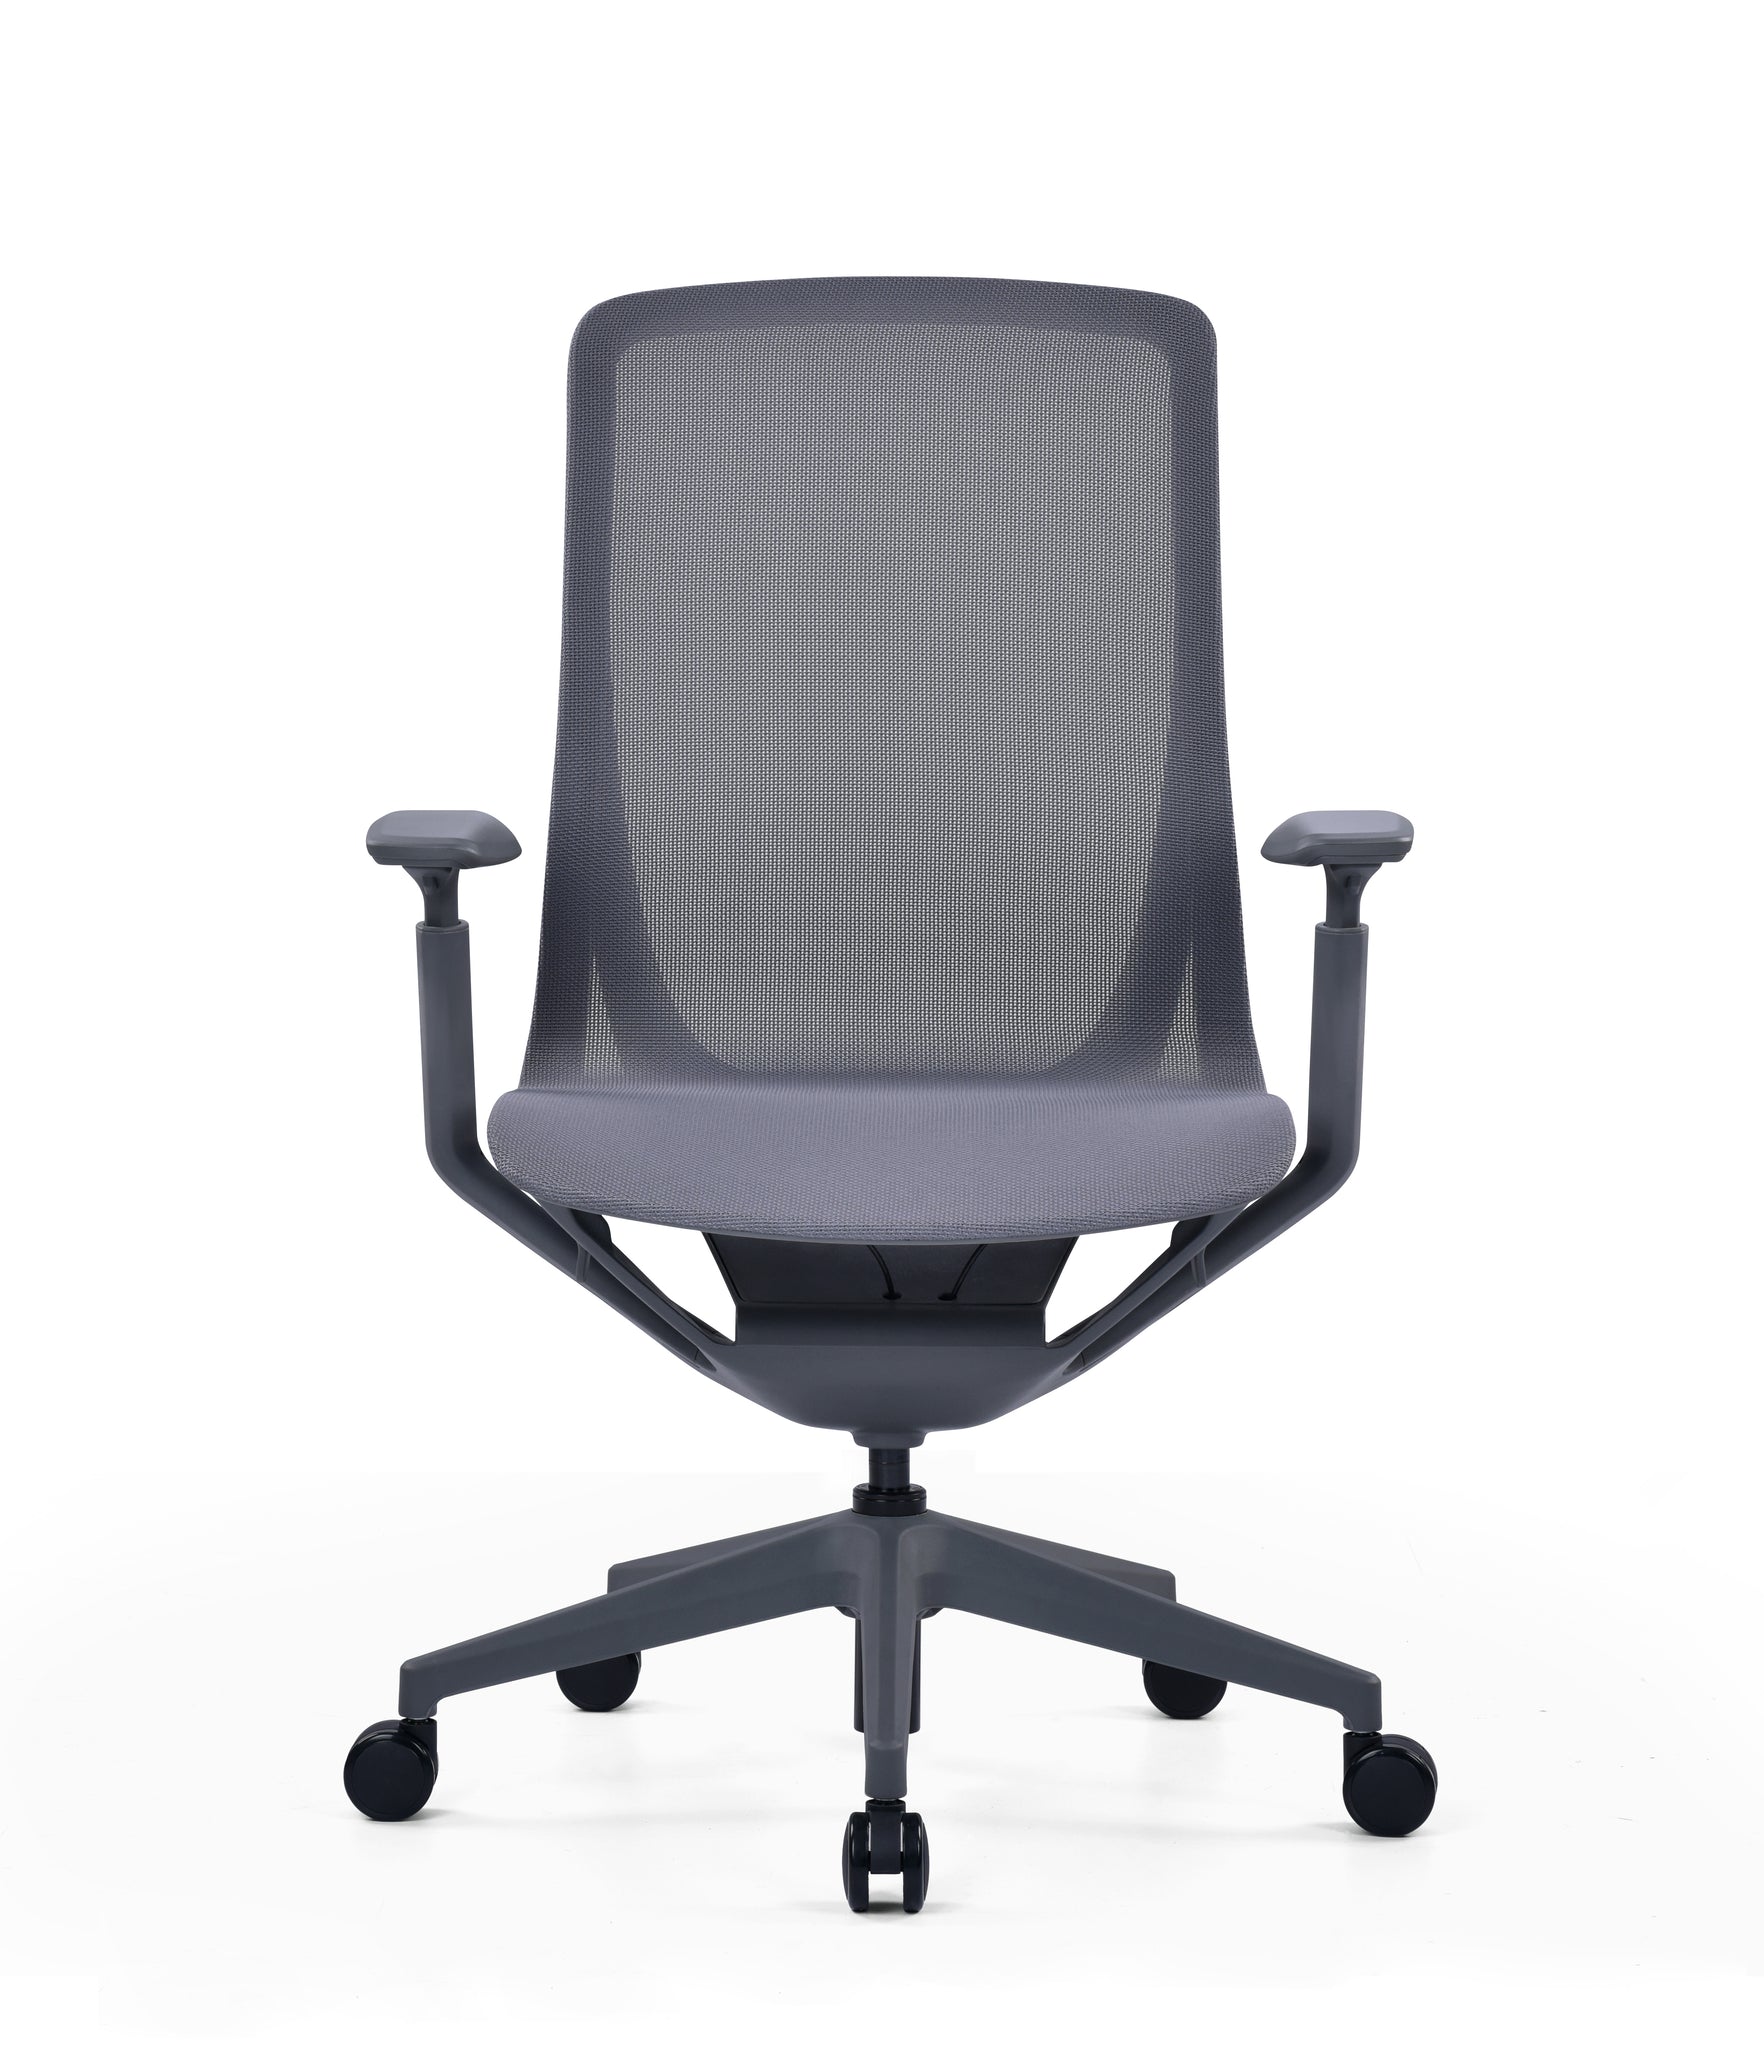 Sillón ejecutivo Epic respaldo y asiento tapizado en malla color gris claro o gris oxford